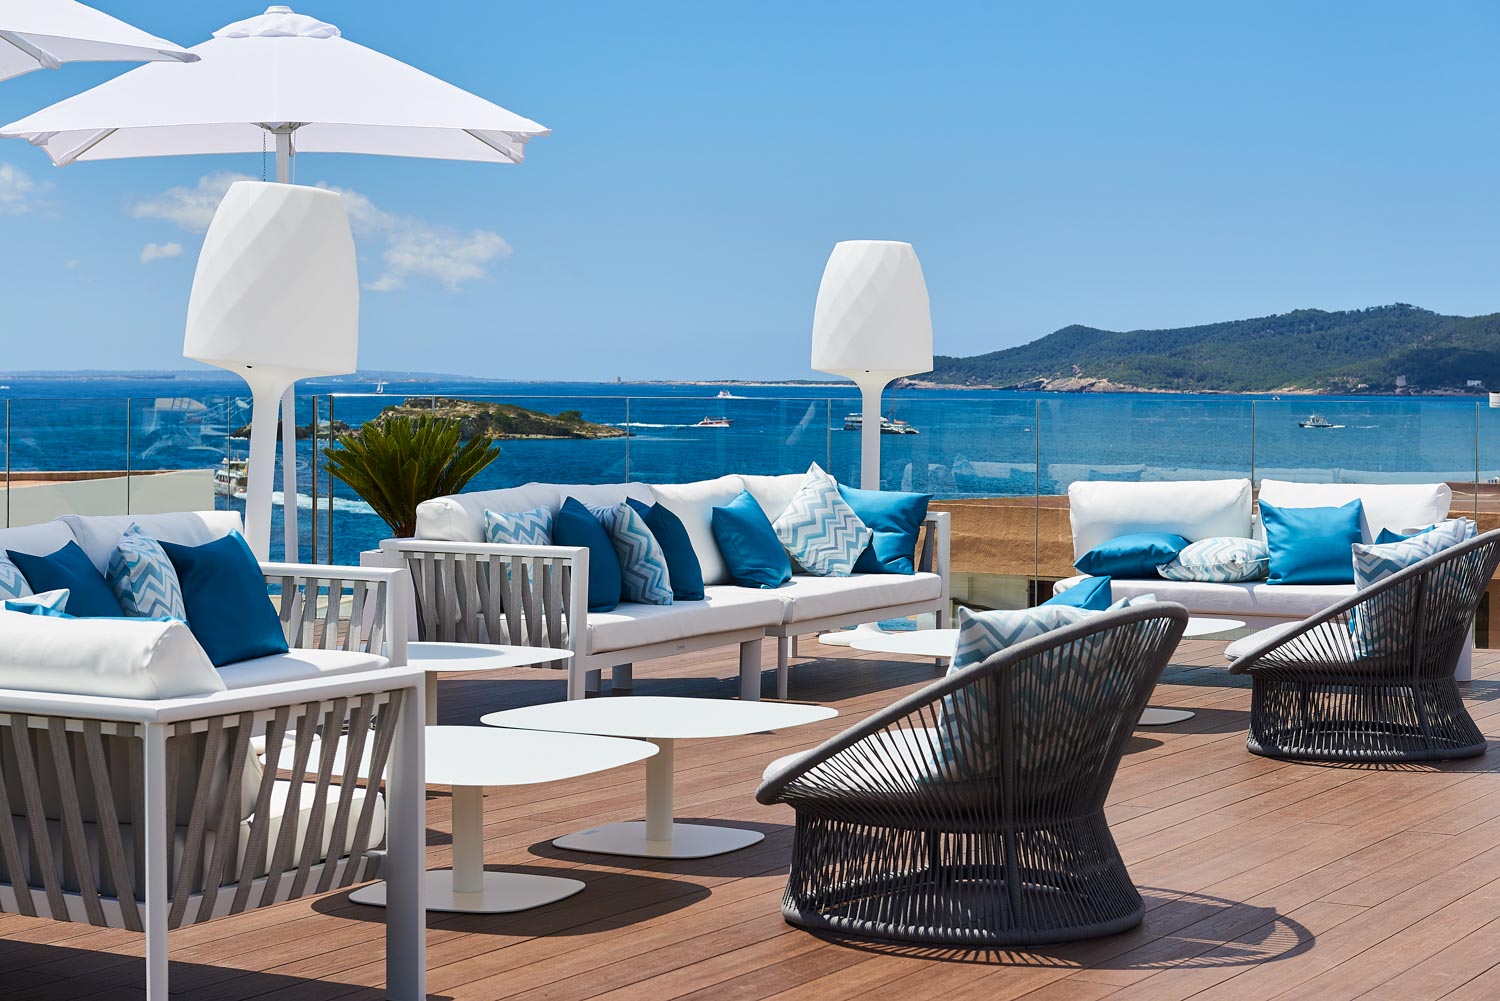 imagen 5 de El Eurostars Ibiza abre sus habitaciones y el verano se tiñe de blanco y azul.